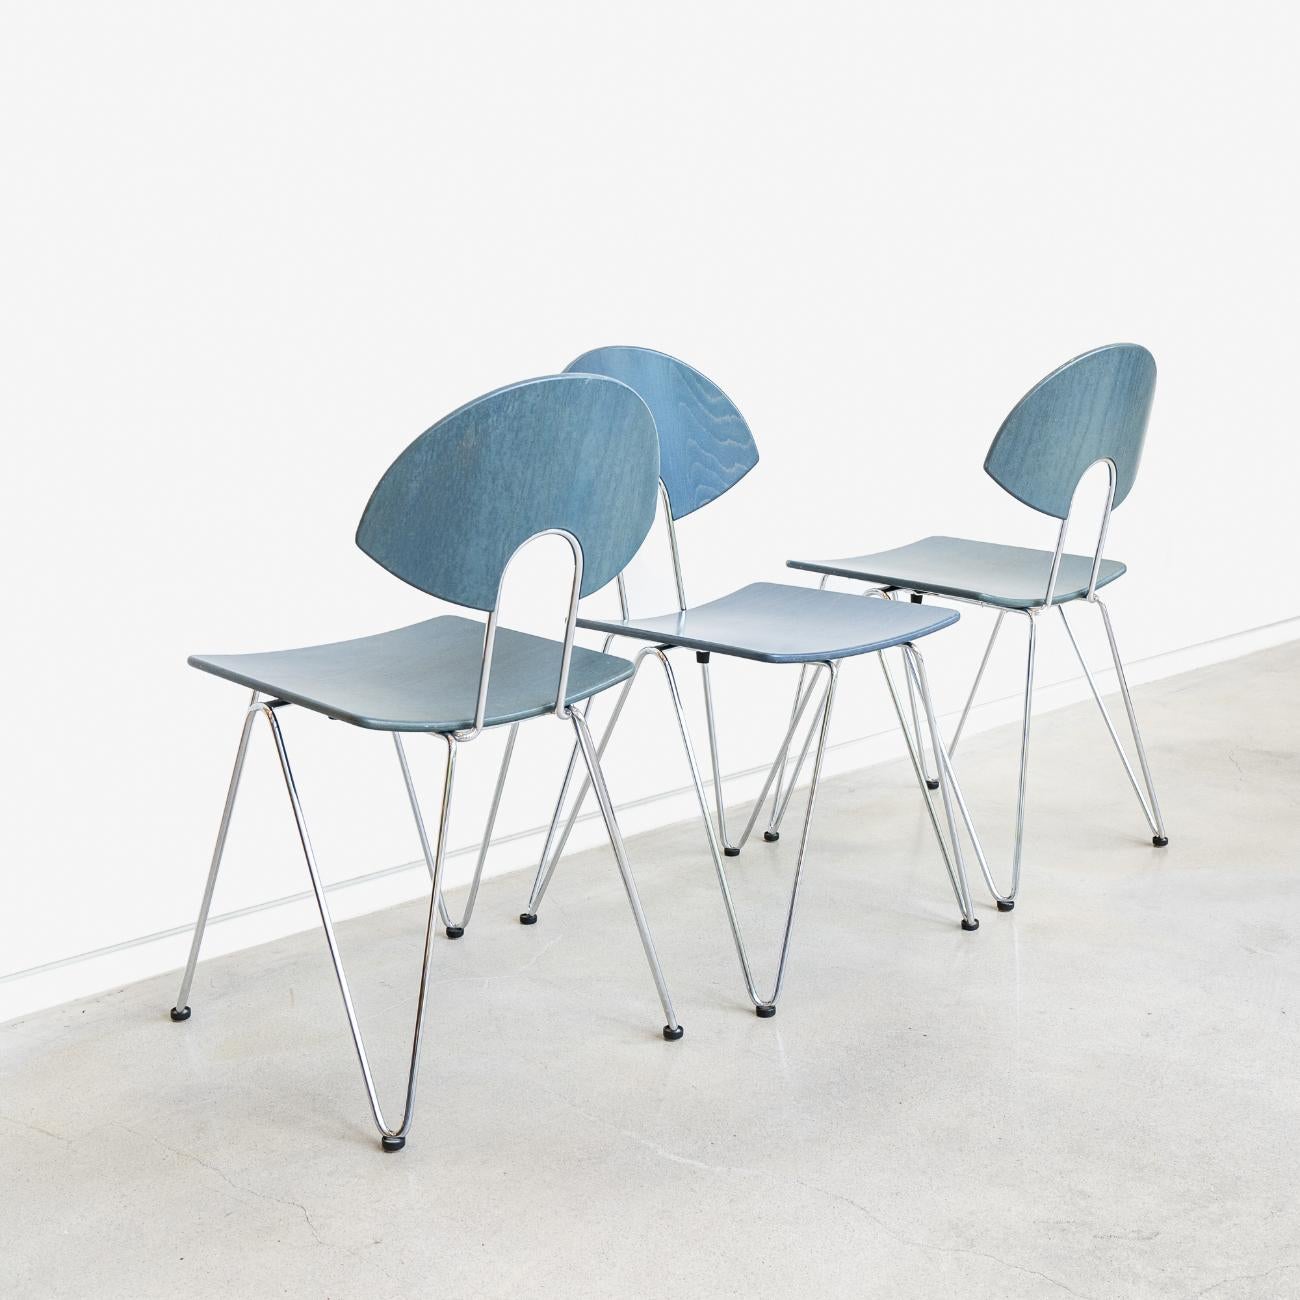 Un ensemble de chaises d'appoint empilables post-modernes Mikado 1800, conçues par Walter Leeman pour la société de mobilier allemande Kusch+Co. 
Pieds et cadre en acier chromé avec sièges et dossiers en contreplaqué moulé teinté. 
Empilable et